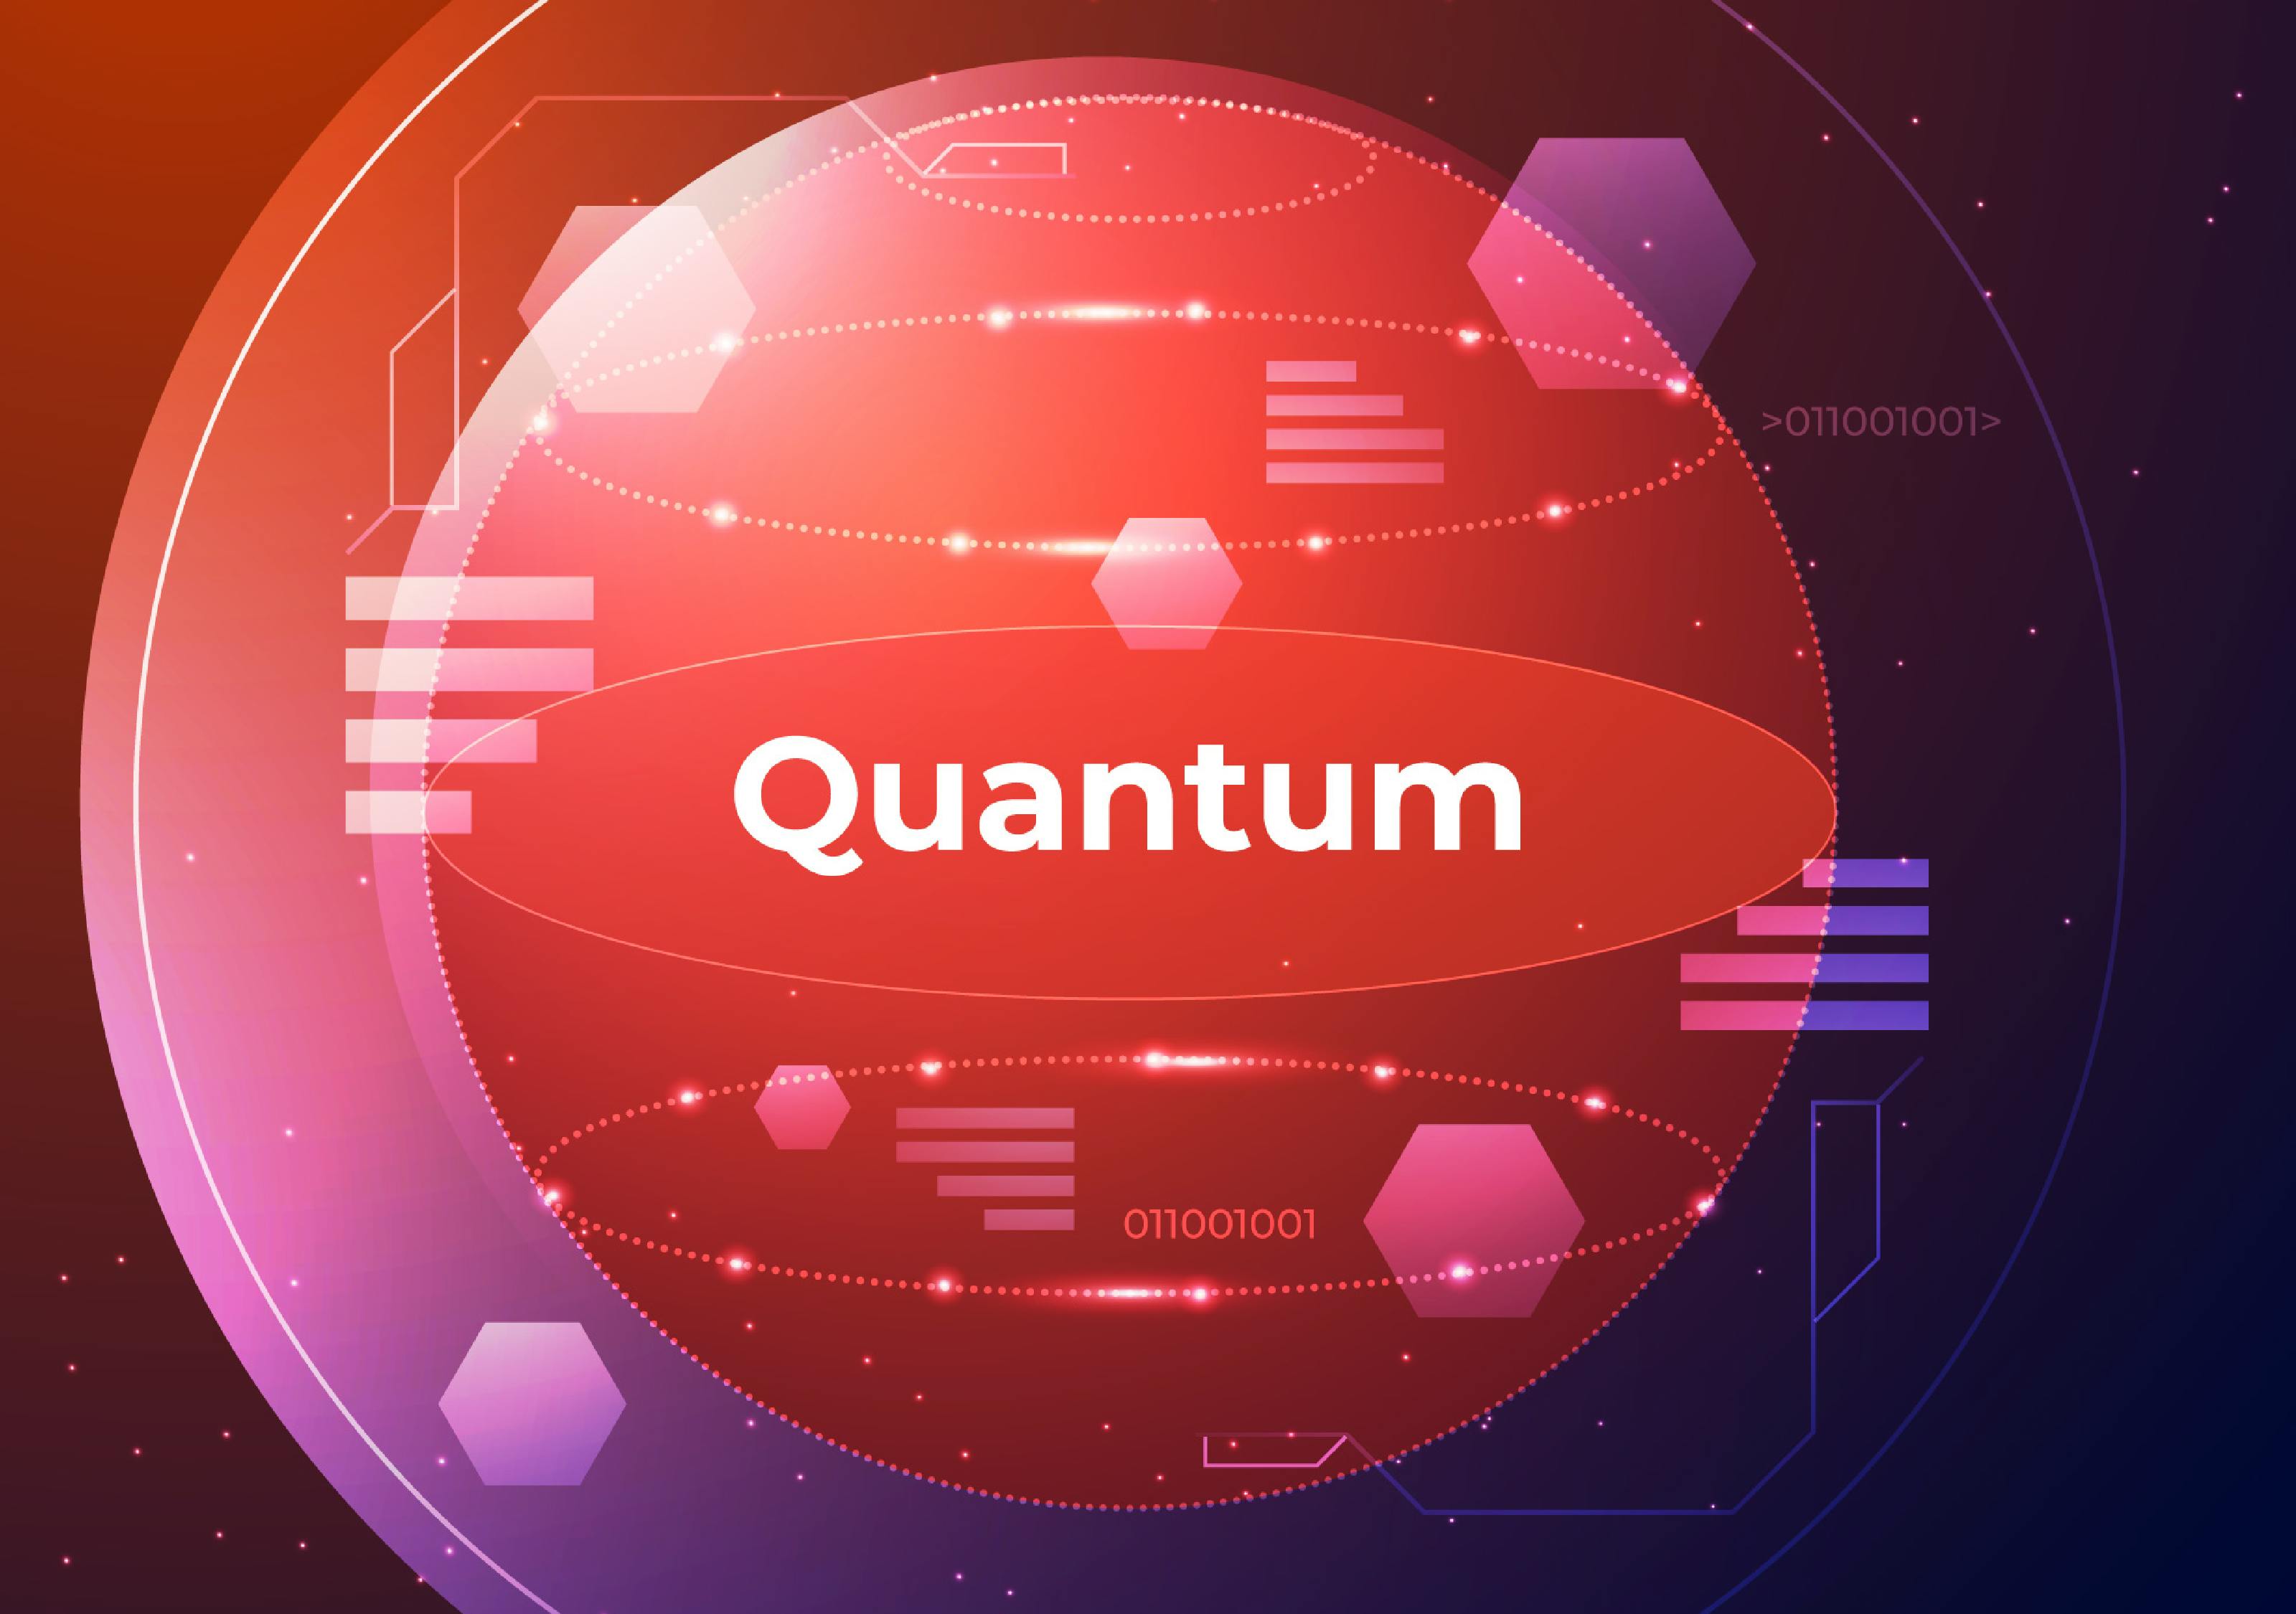 quantum computing image